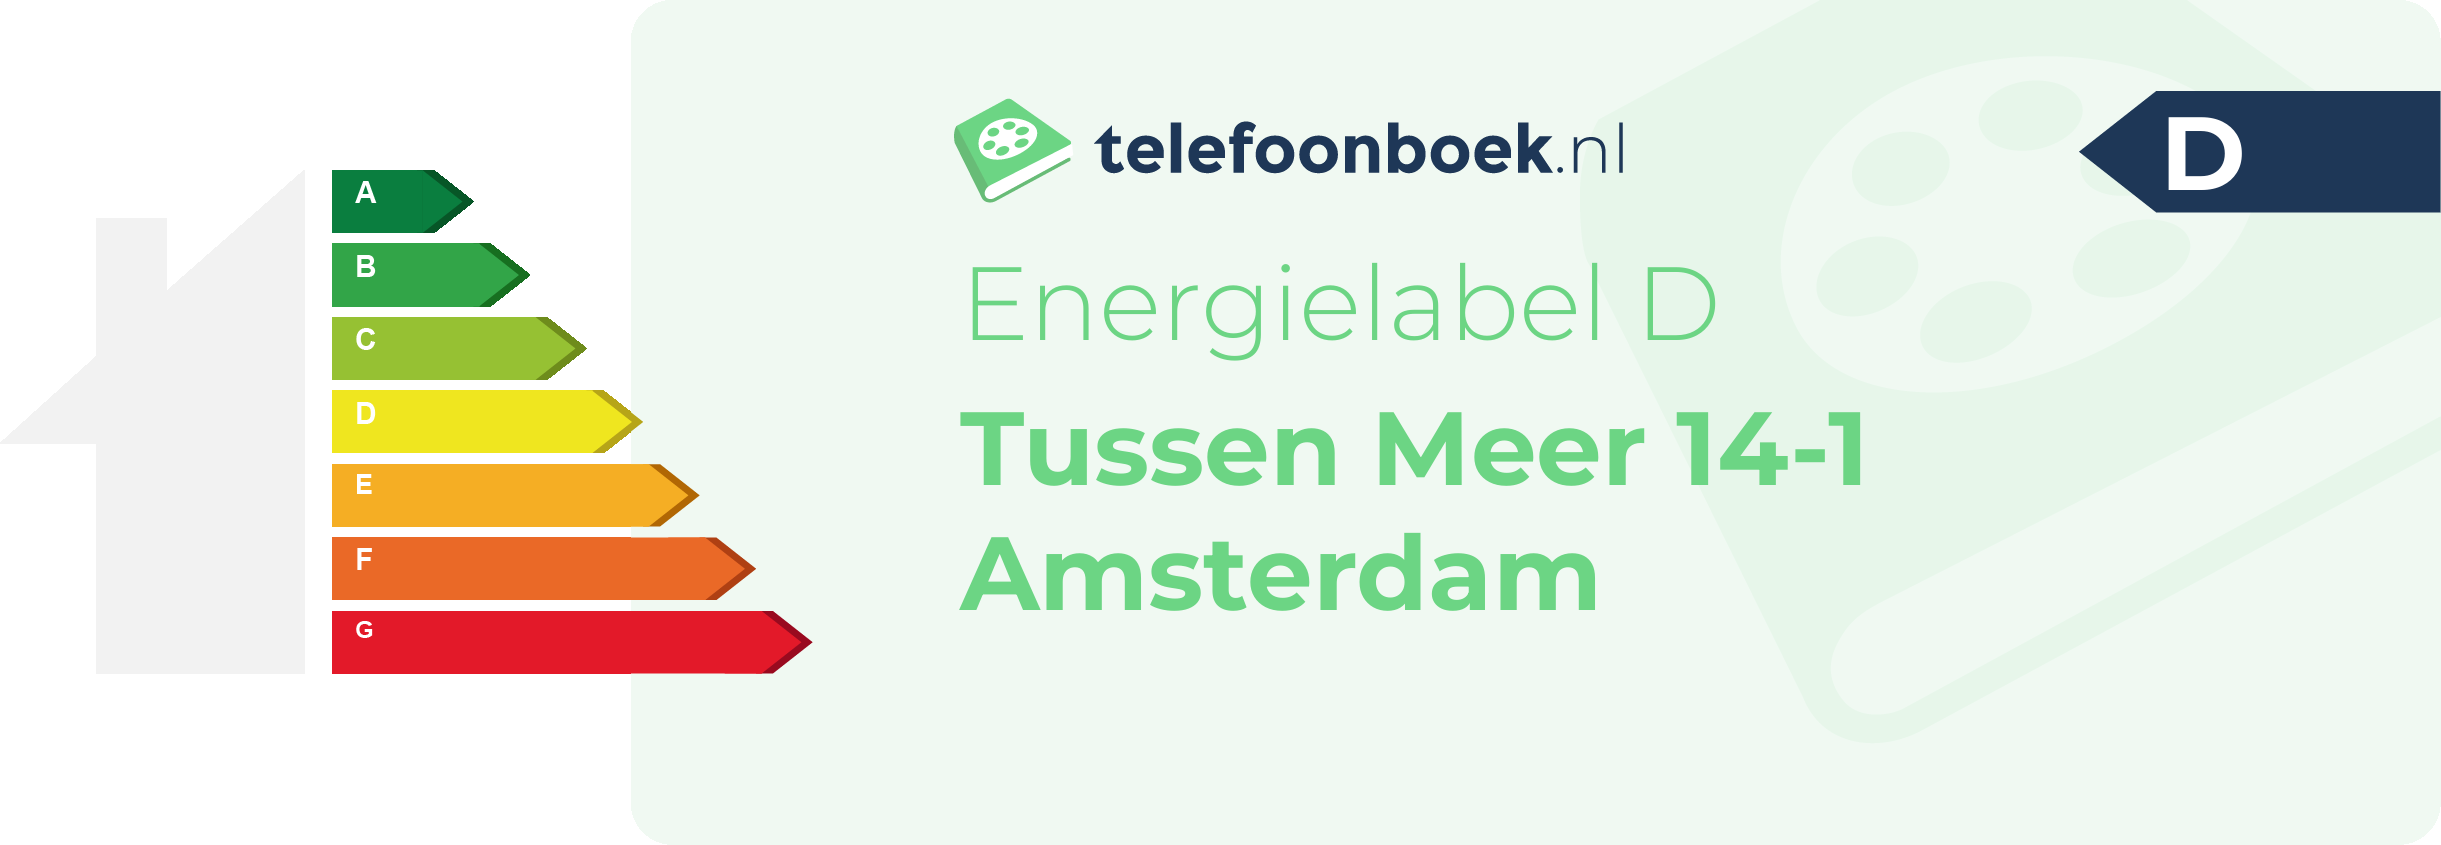 Energielabel Tussen Meer 14-1 Amsterdam